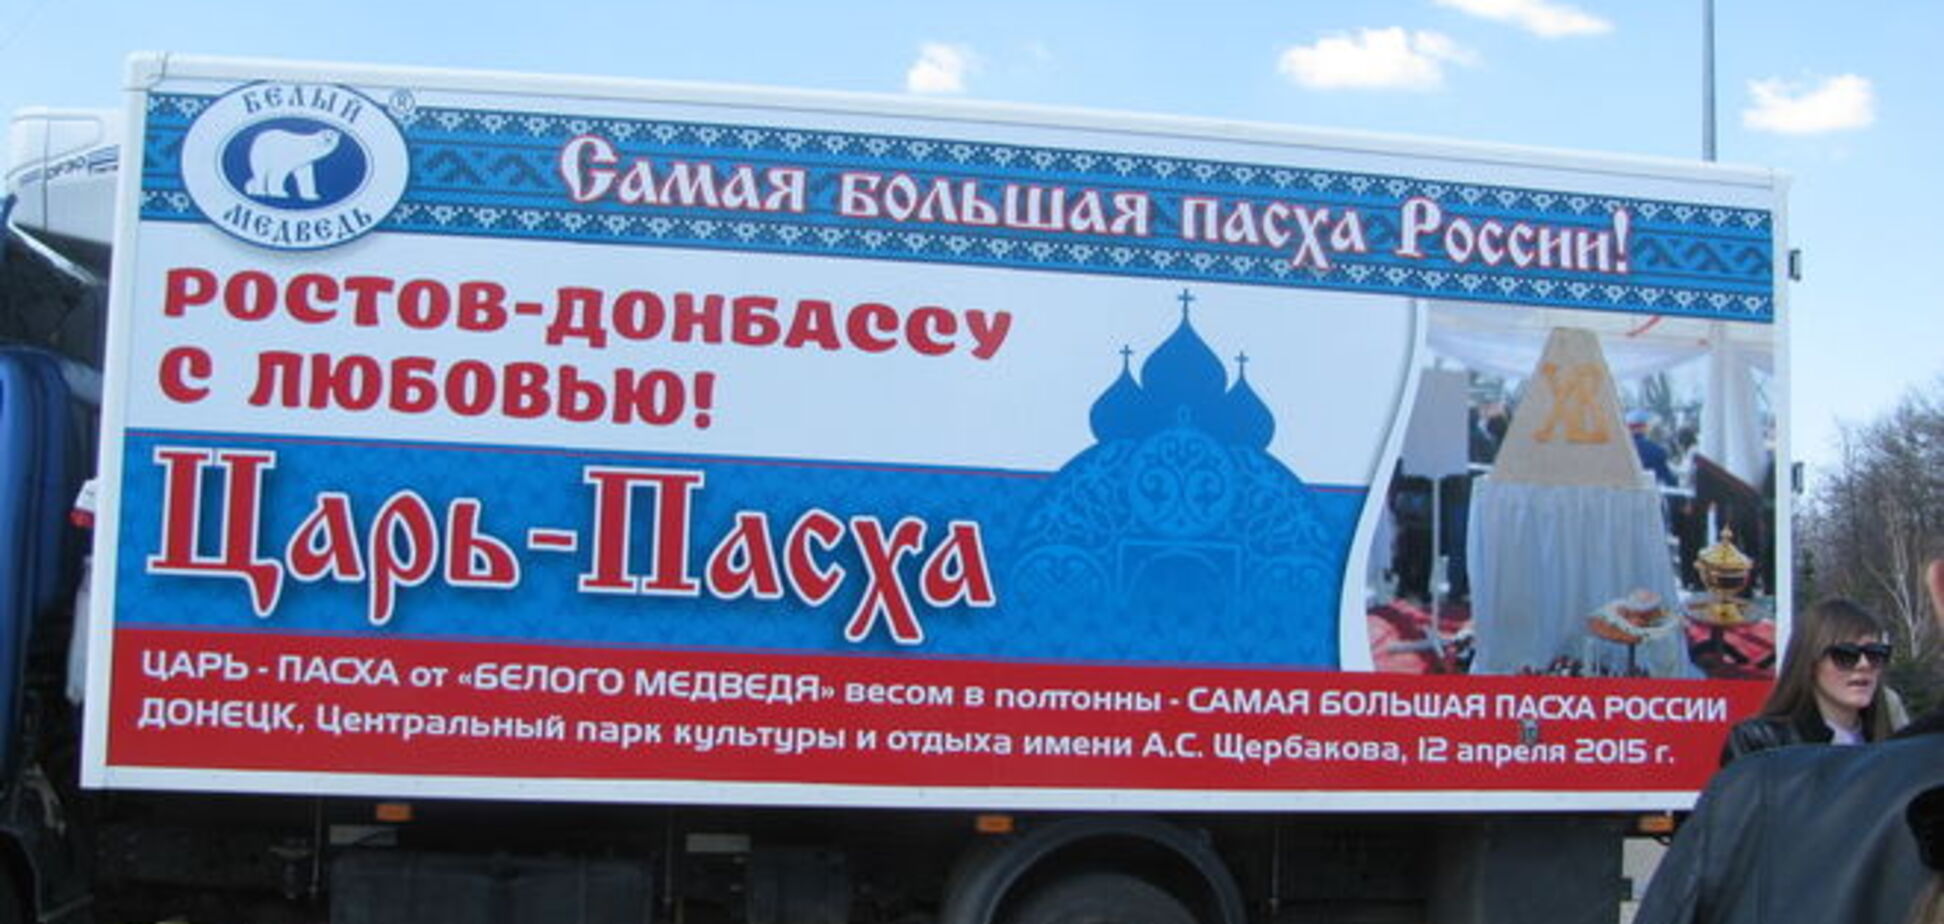 'Царь-Пасха' во всей красе. В Донецке паску раздавали из-под автоматов. Фоторепортаж